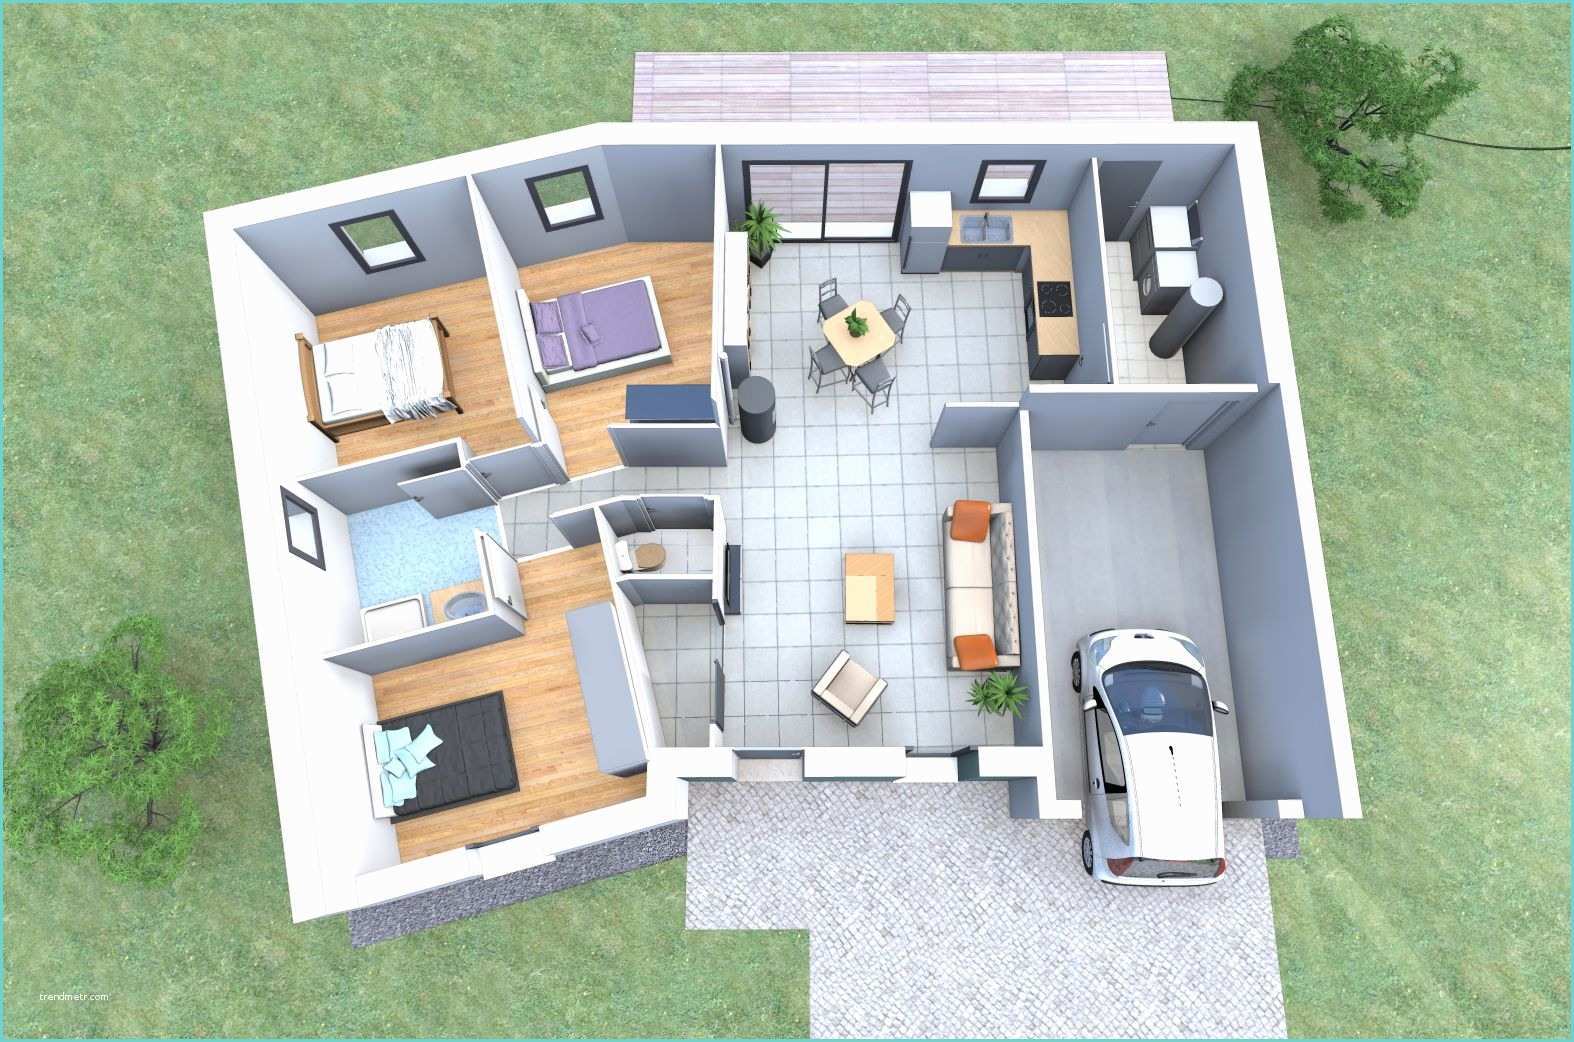 Plan De Maison Moderne 4 Chambres 3d Plan 3d D Une Maison En V De Plain Pied Avec 3 Chambres